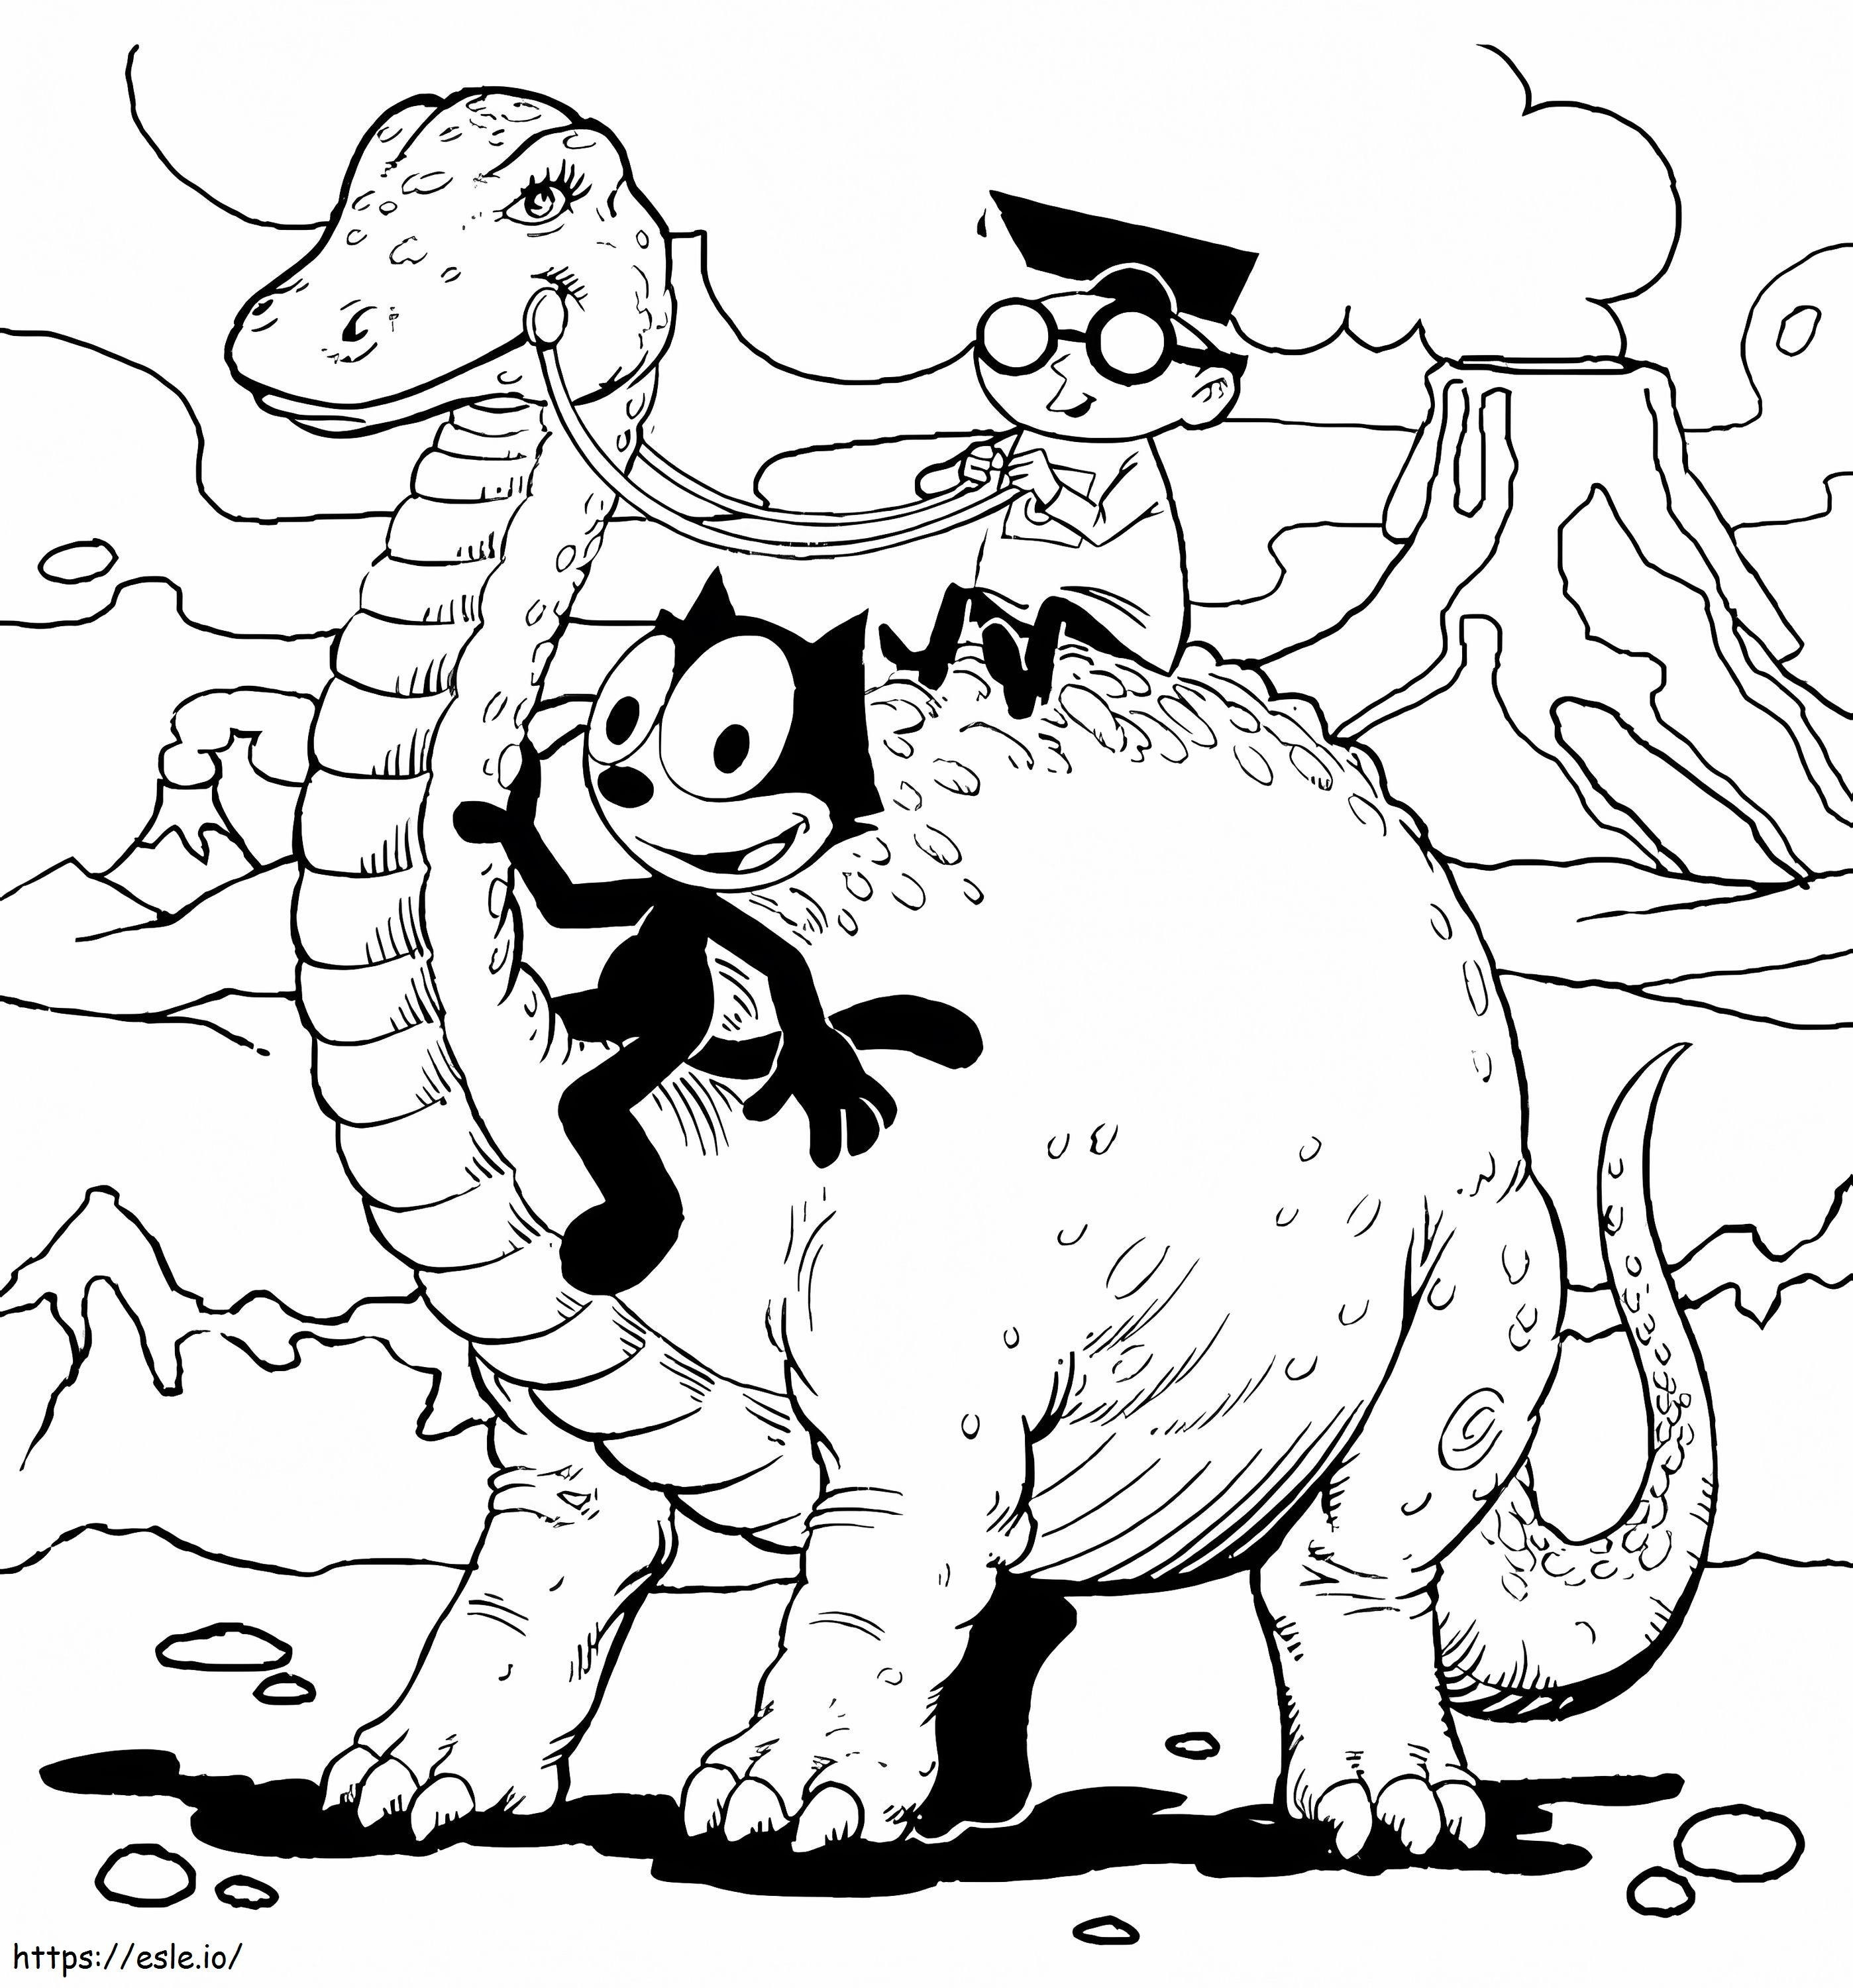 Felix Si Kucing Dan Dinosaurus Gambar Mewarnai